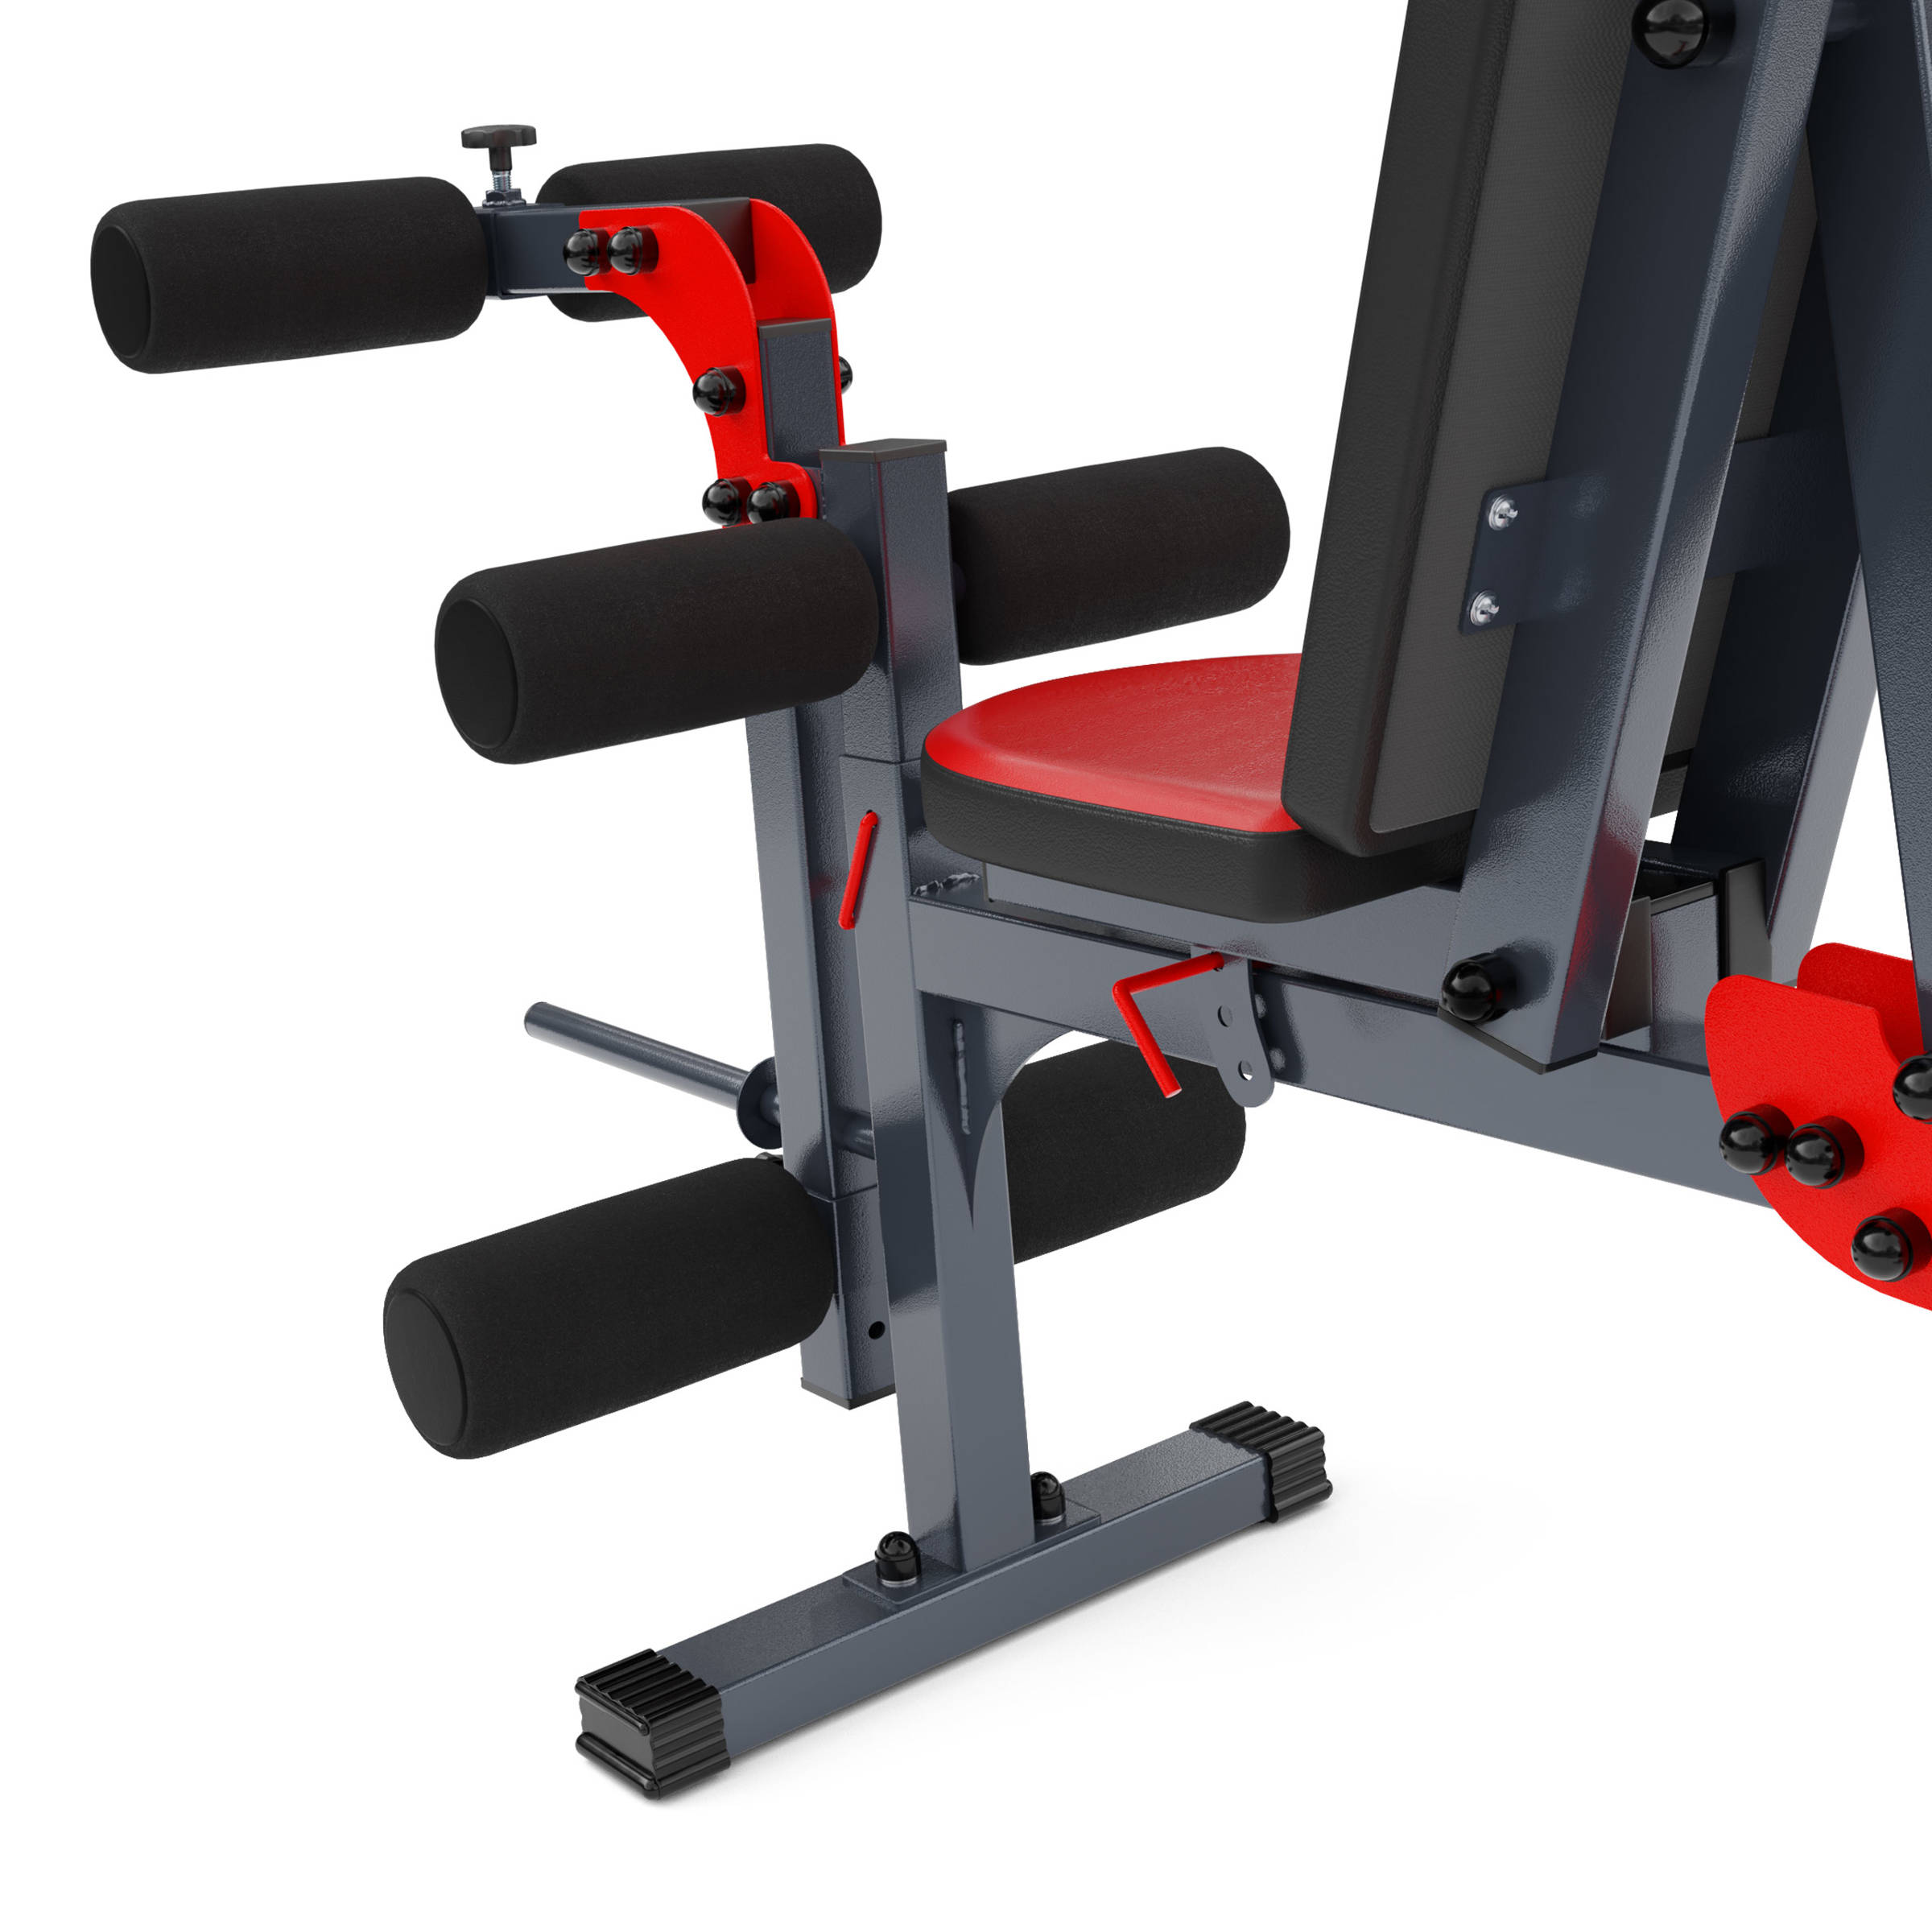 K-sport Gmbh Kit d'entraînement: banc de musculation + curler pour les  jambes - KSSL104 - Colizey